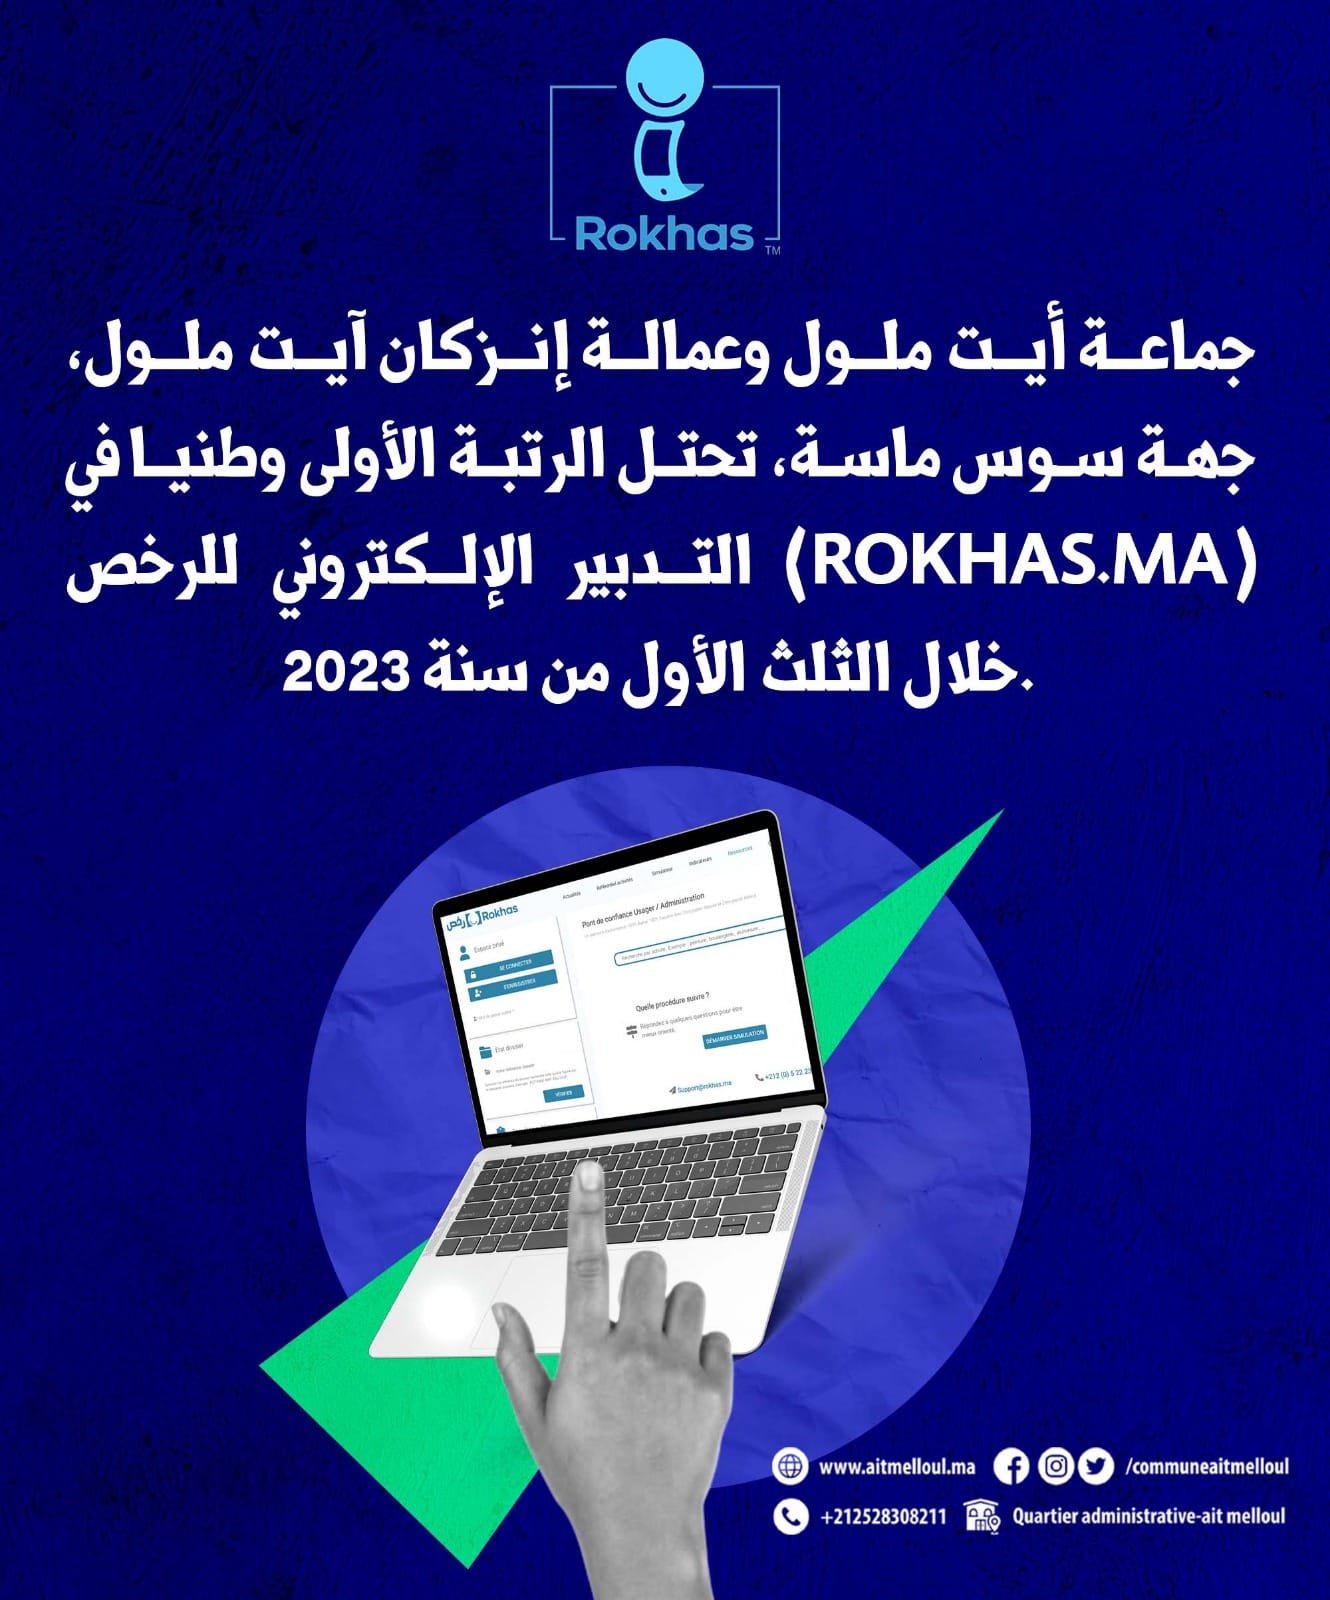 جماعة أيت ملول وعمالة إنزكان آيت ملول، جهة سوس ماسة، تحتل الرتبة الأولى وطنيا في التدبير الإلكتروني للرخص (Rokhas.ma) خلال الثلث الأول من سنة 2023.